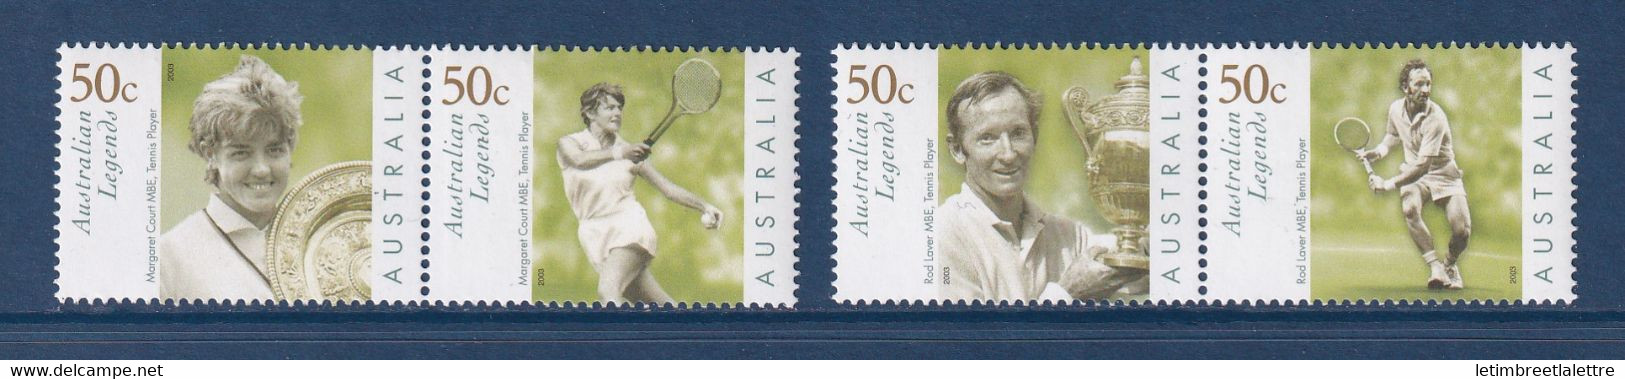 ⭐ Australie - YT N° 2090 à 2093 ** - Neuf Sans Charnière - 2003 ⭐ - Mint Stamps